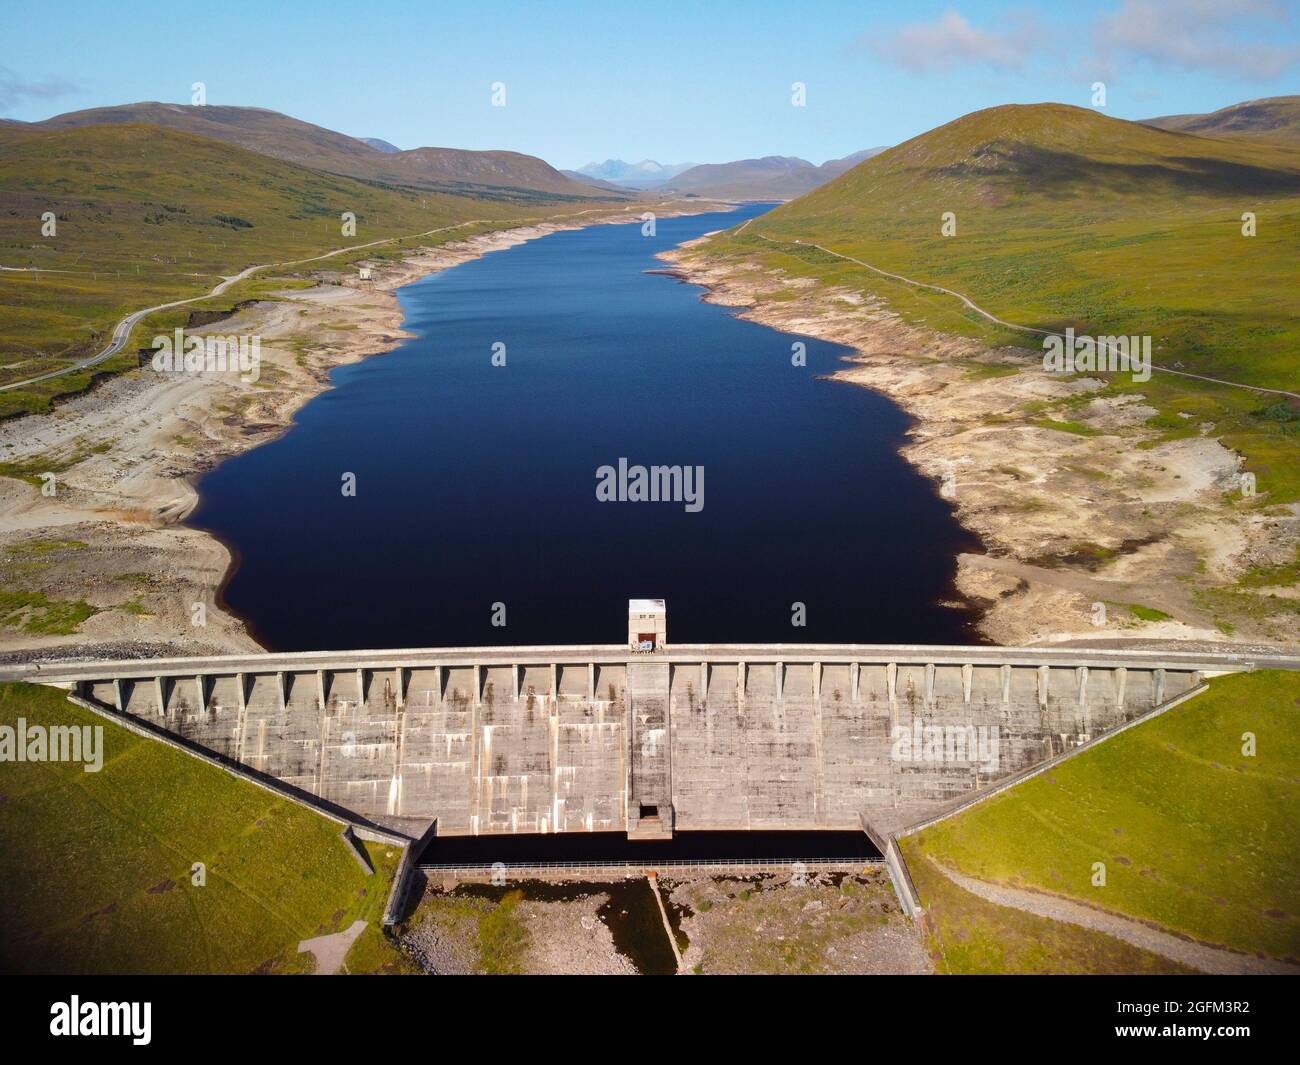 Garve ,Scozia, Regno Unito. 26 agosto 2021. Questa fotografia del drone mostra il livello dell'acqua in Glascarnoch Loch è basso dopo molti mesi relativamente asciutti con pioggia bassa. Glascarnoch Dam fa parte dello schema idroelettrico Conon di SSE. Il tempo caldo e secco continuo in agosto non farà nulla per aumentare i livelli d'acqua nel lago. Iain Masterton/Alamy Live News. Foto Stock